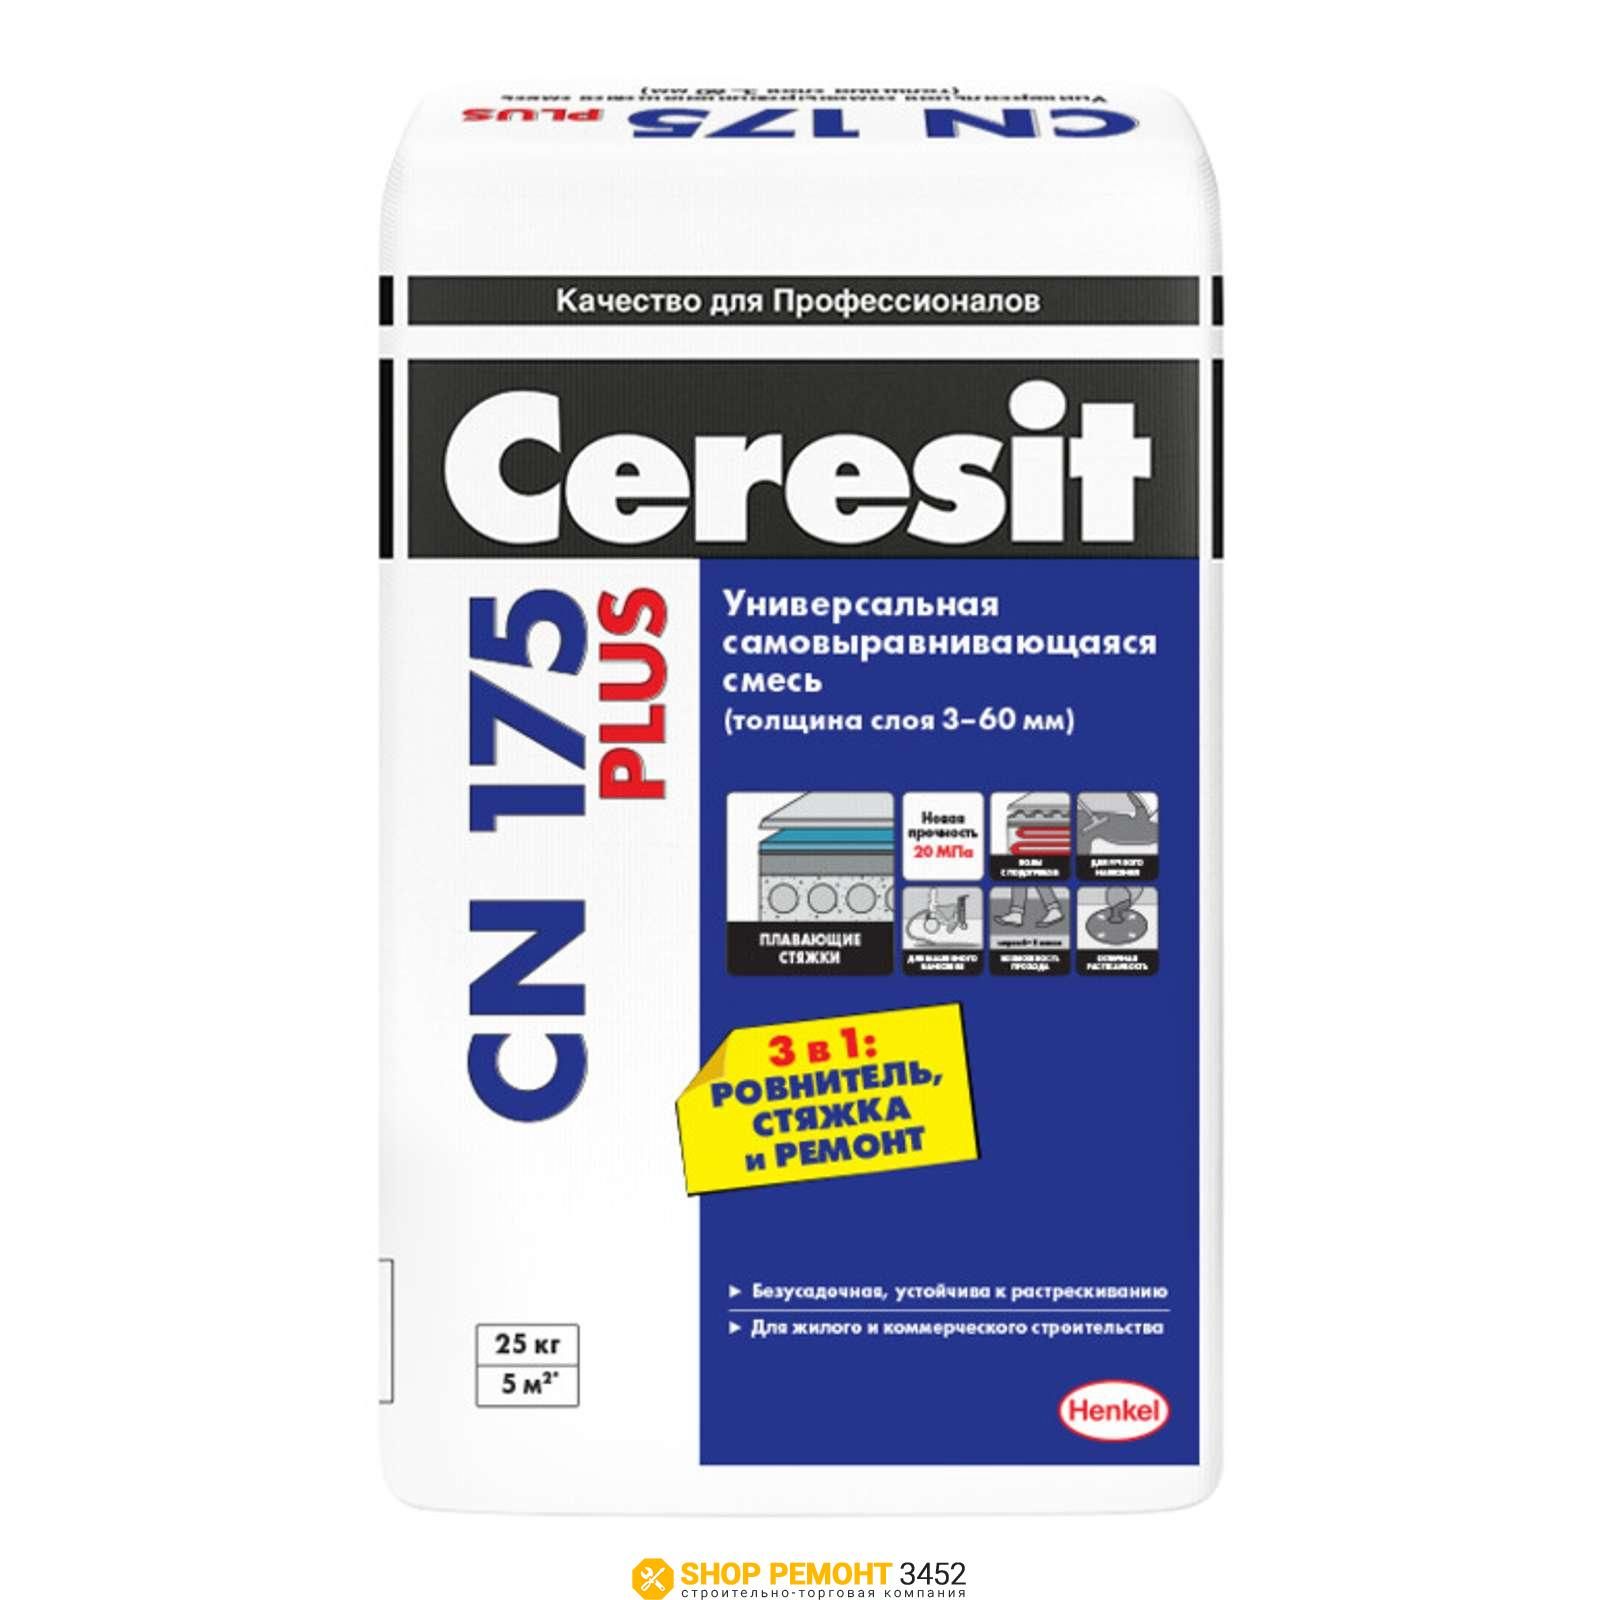 Смесь для пола Ceresit CN175 самовыравнивающаяся 3-60мм (25кг)